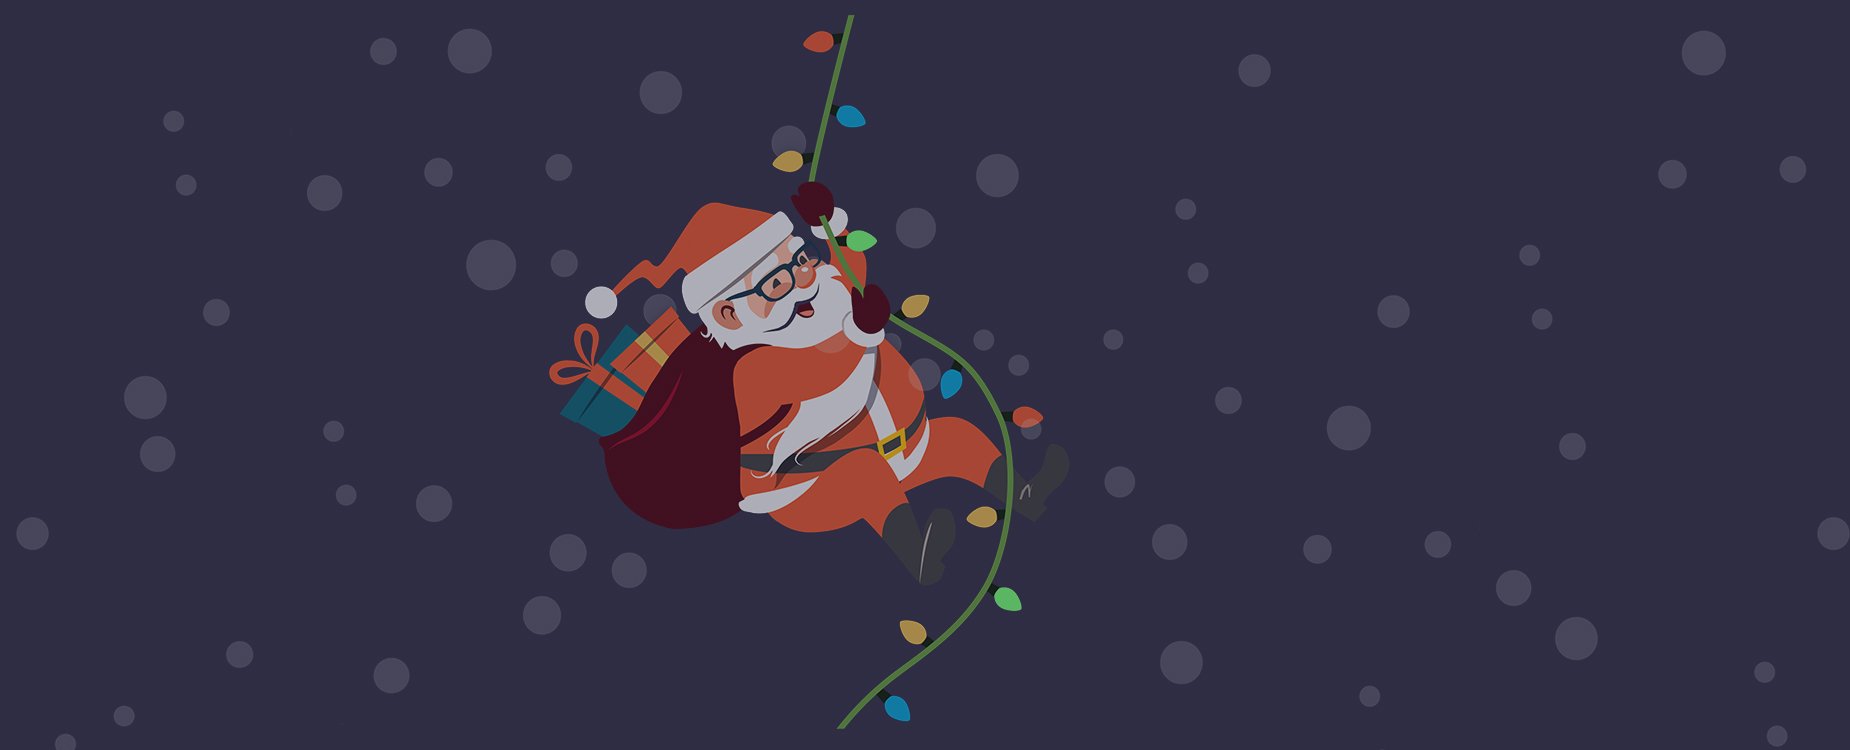 Santa swings on some Christmas lights